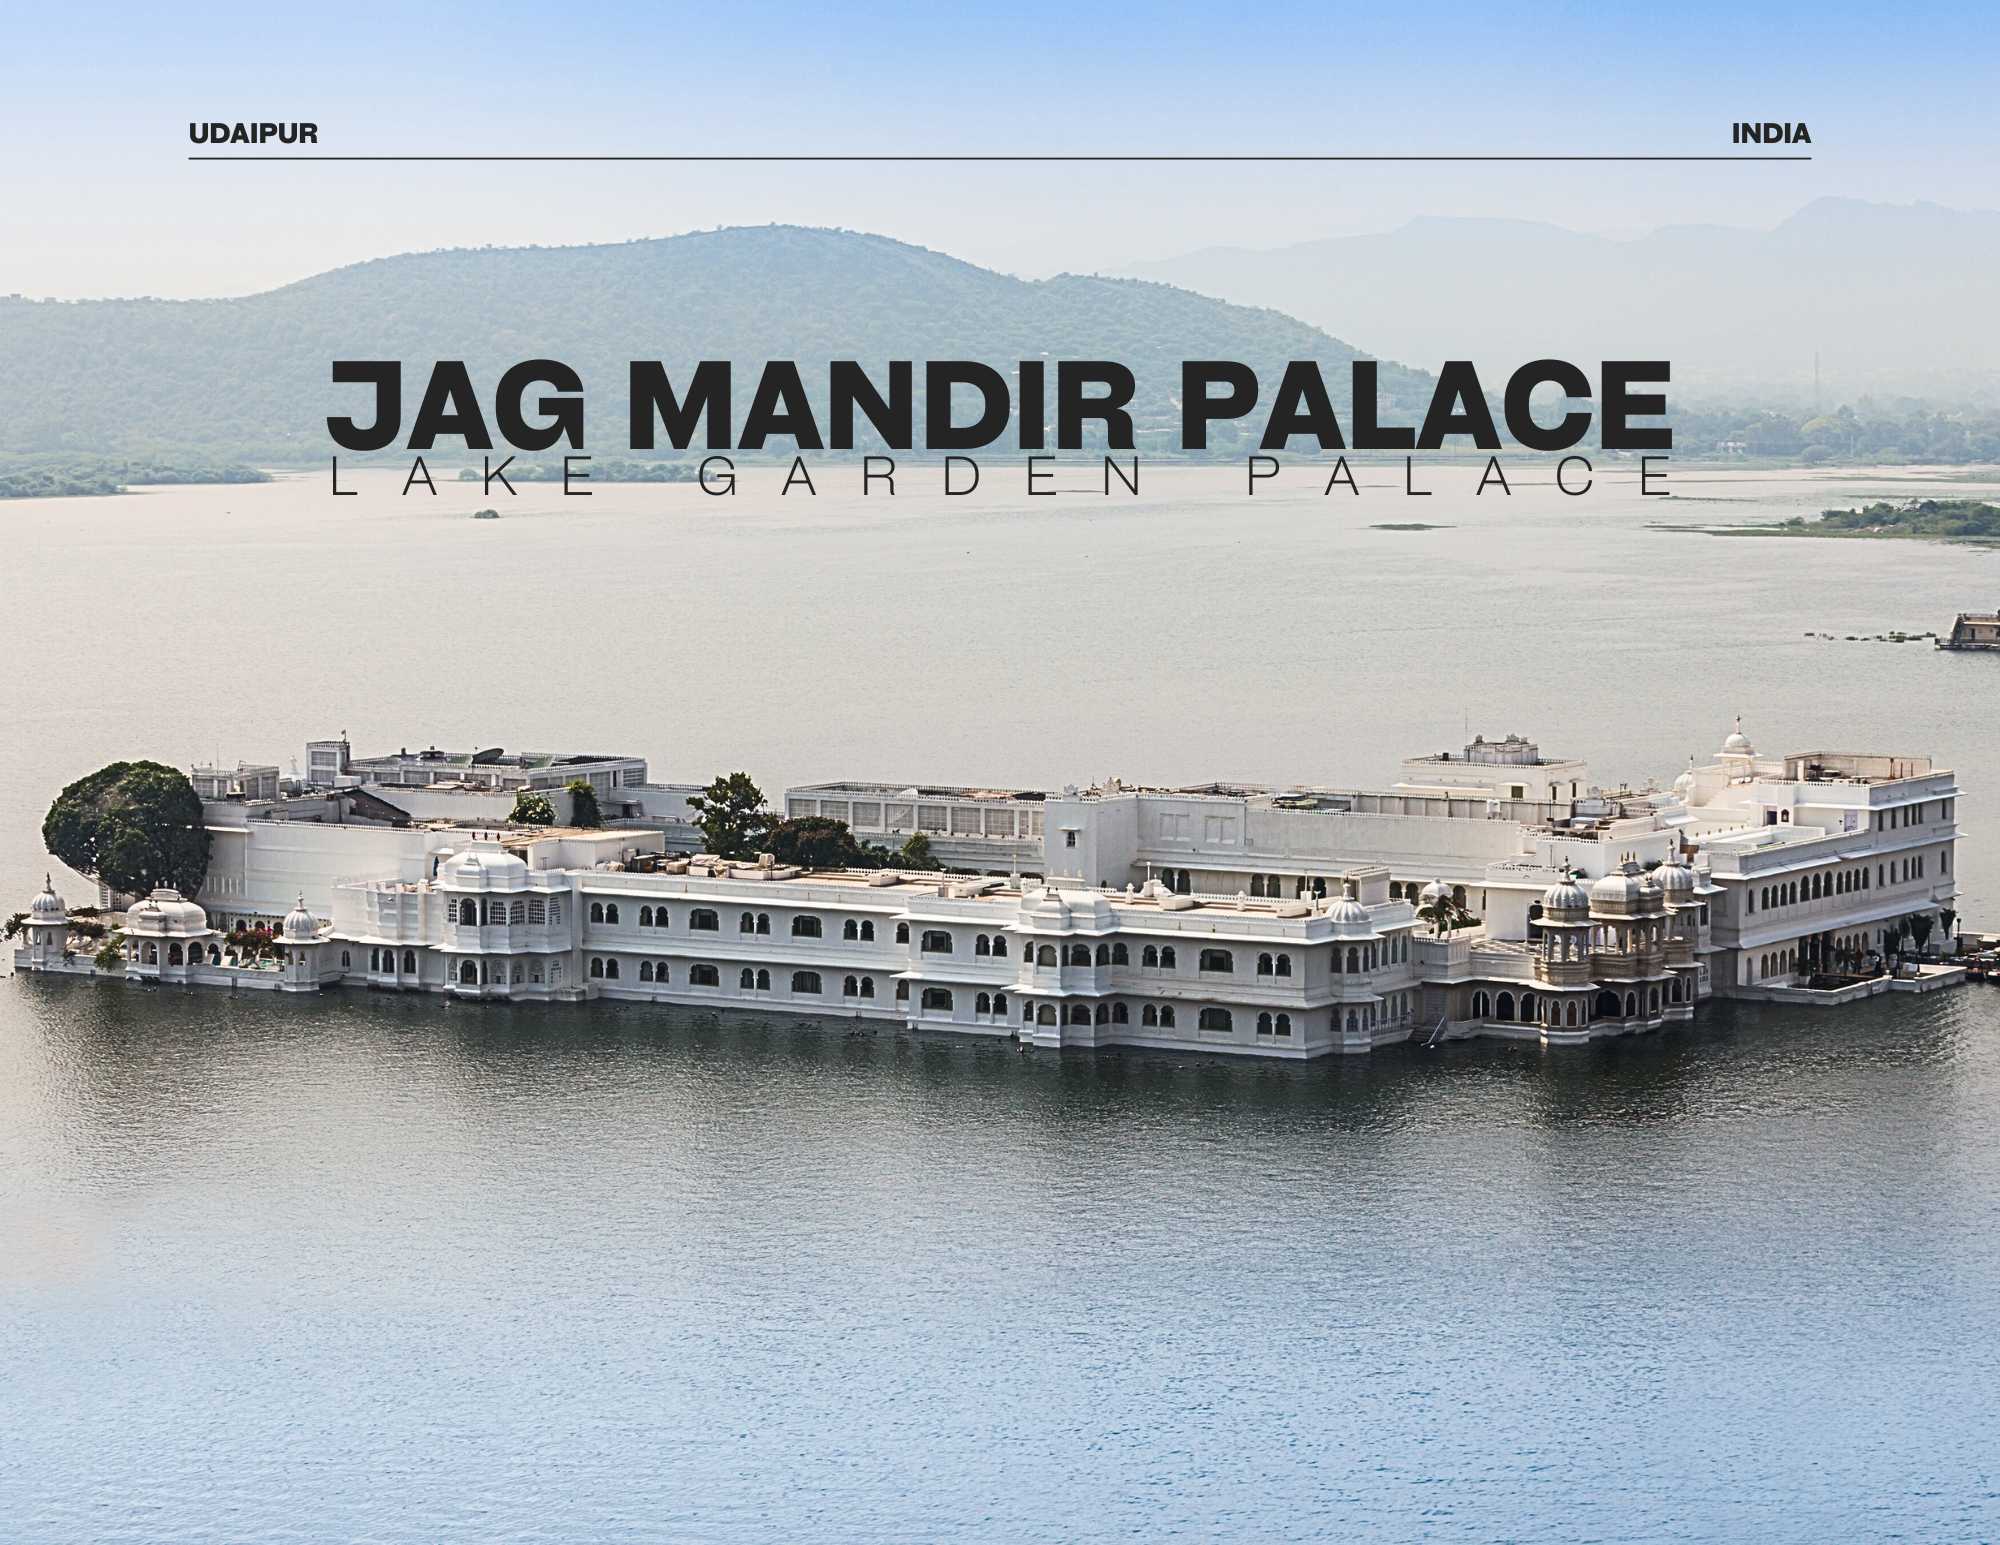 jag-mandir-palace-udaipur-india-freebirdtour